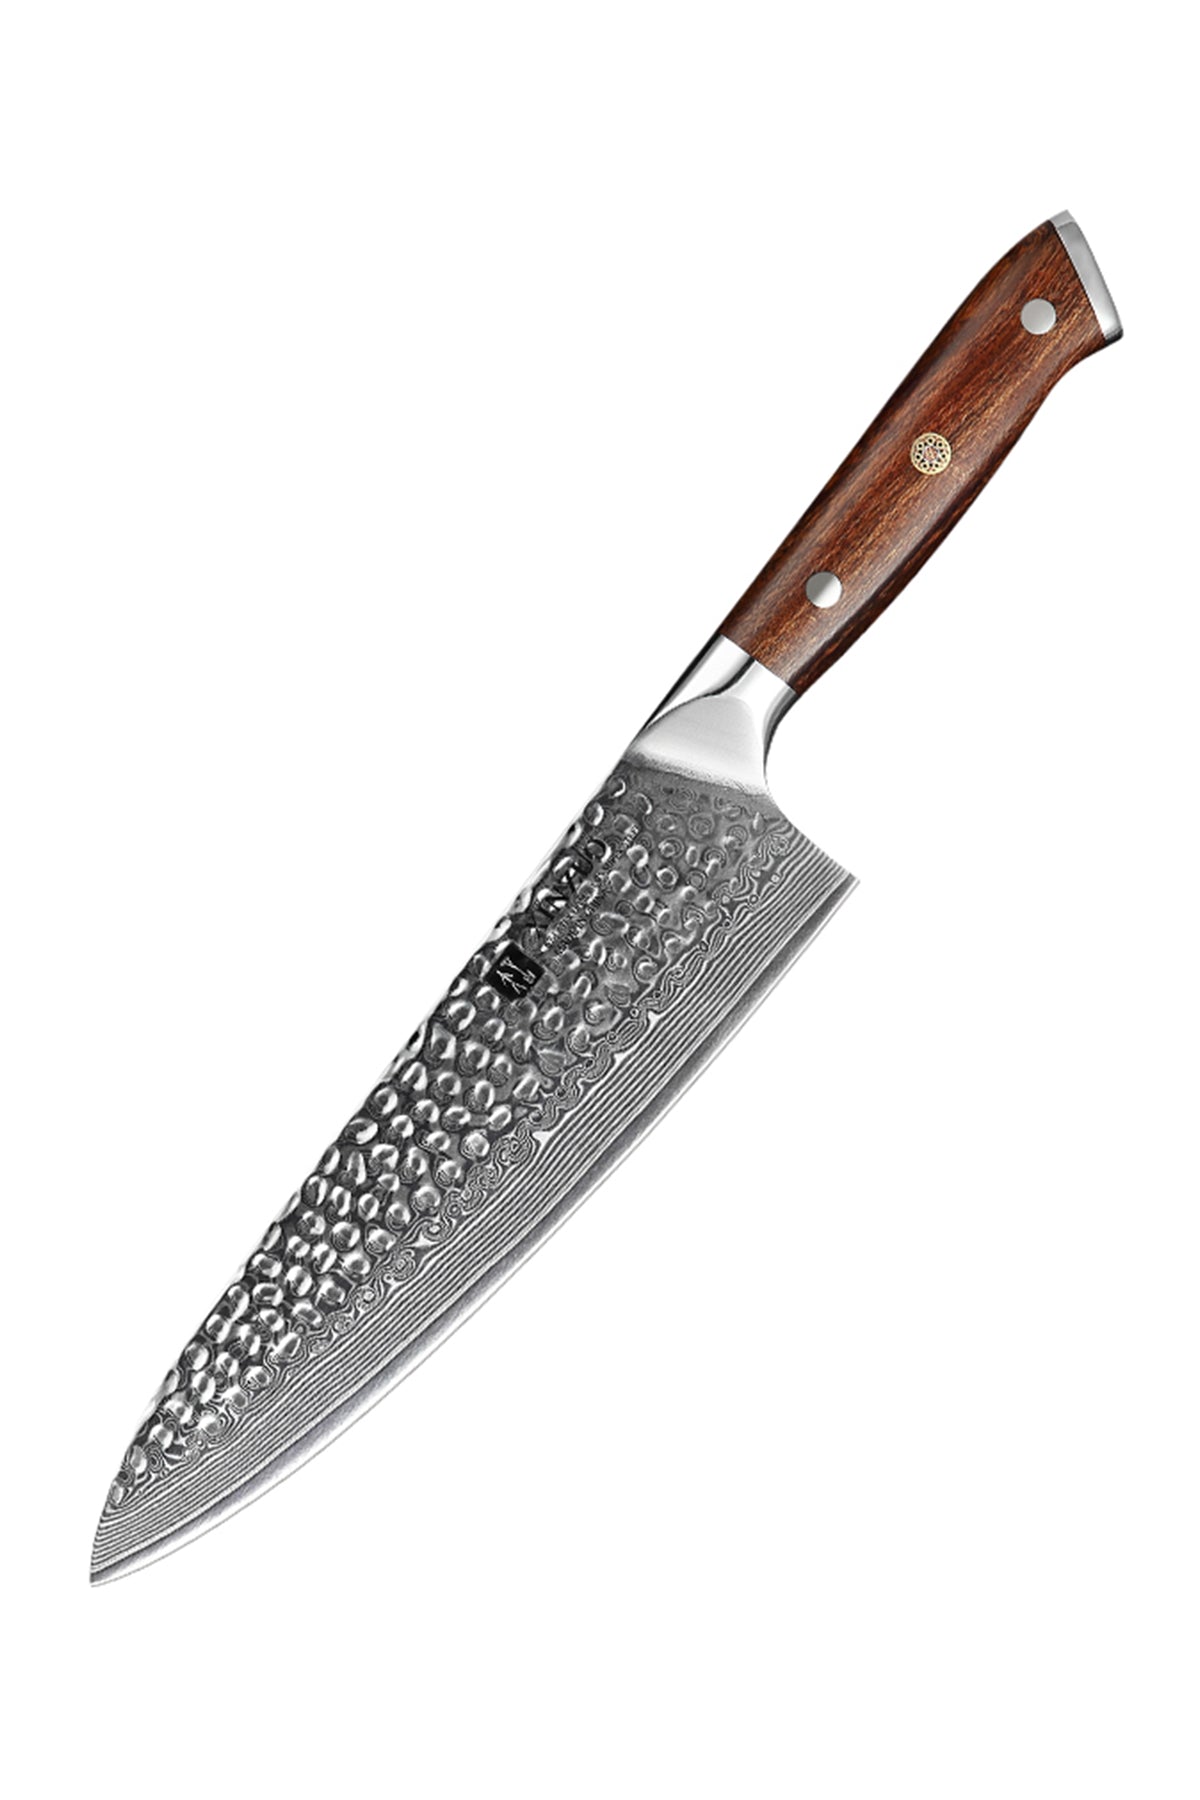 Damascus Kitchen Knives B13D Series - Build Your Own Bundle